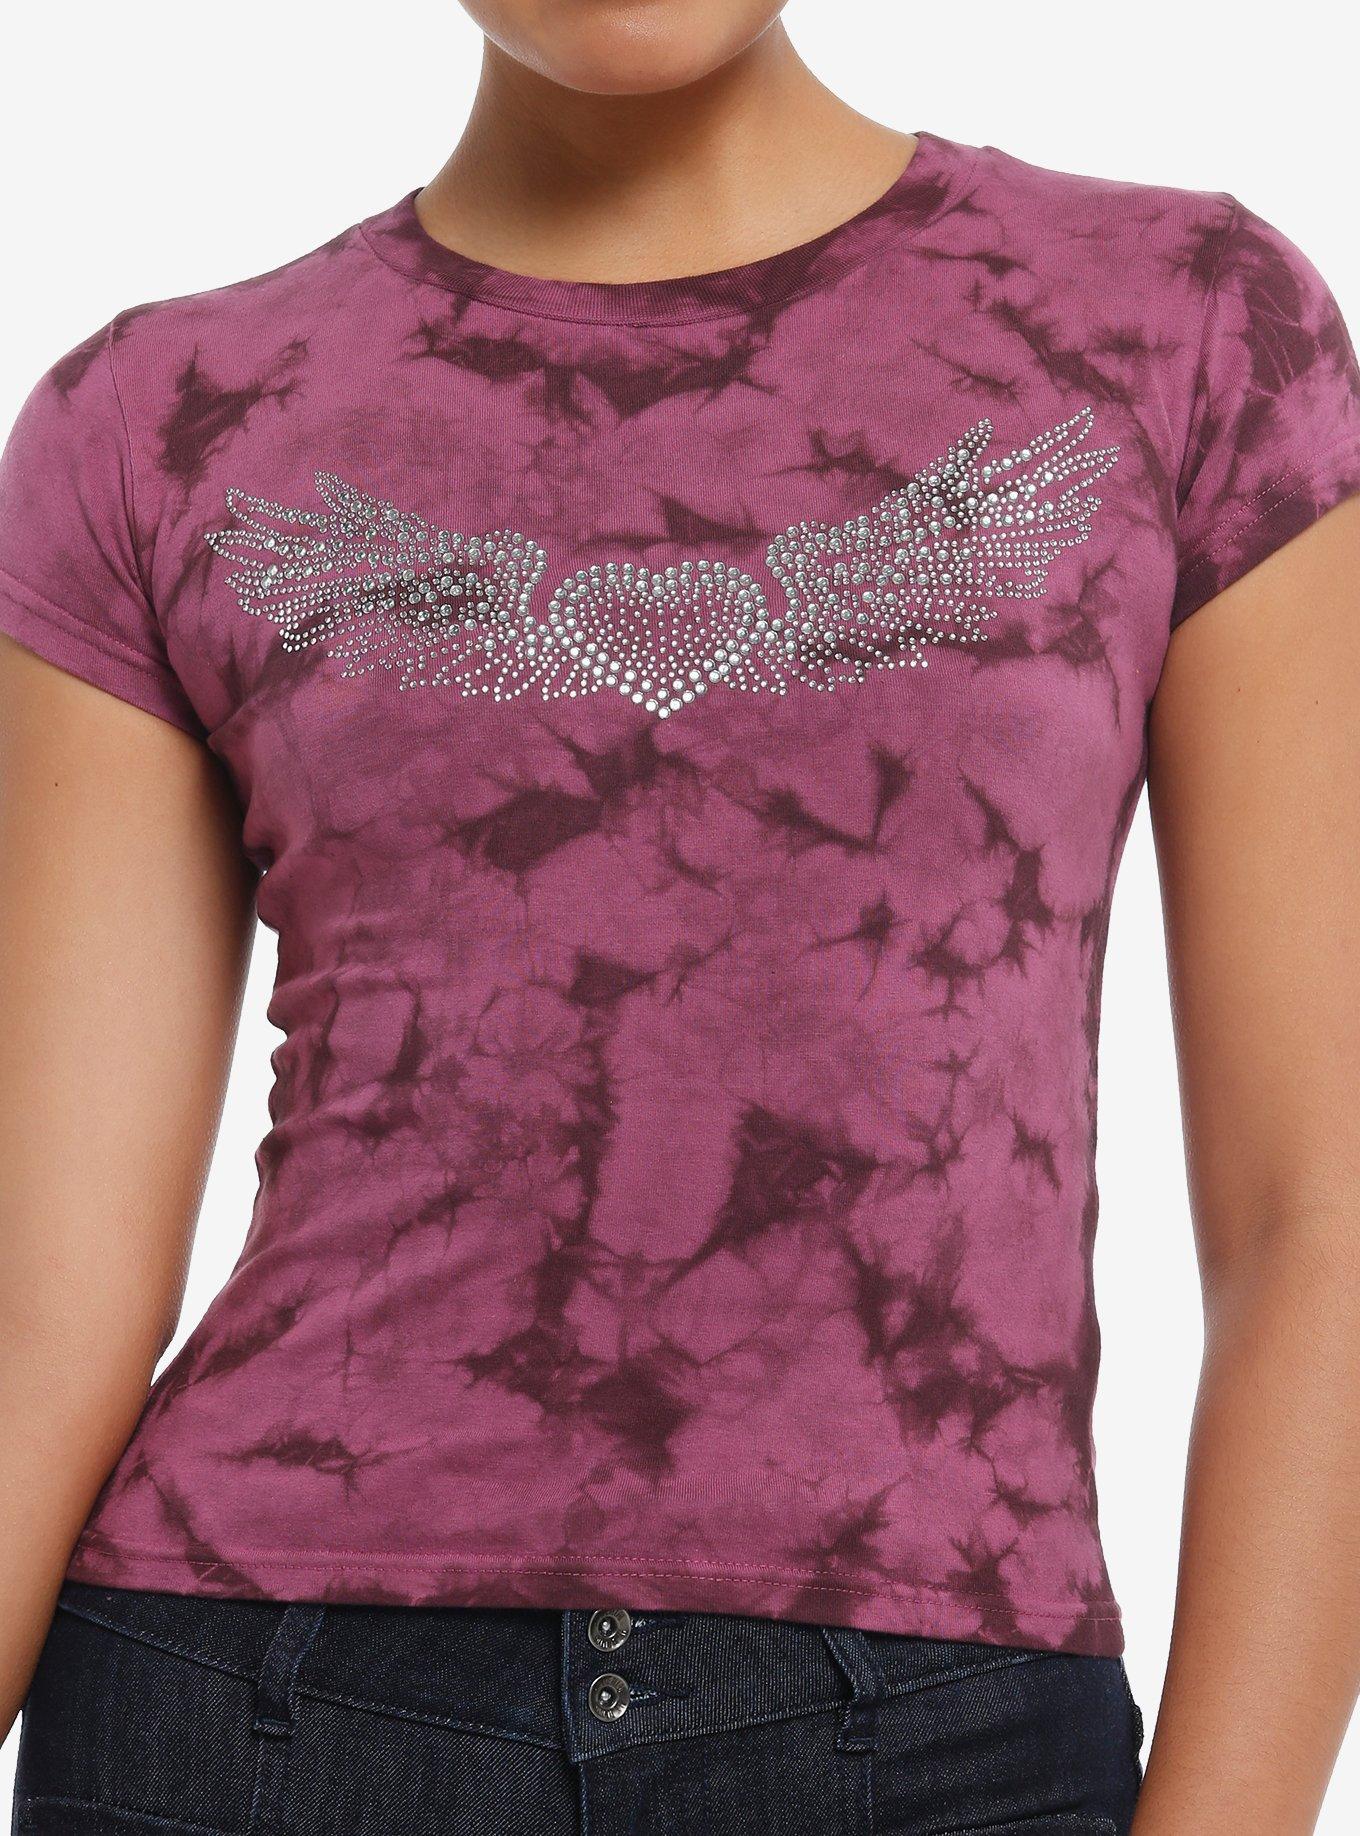 Winged Heart Rhinestone Pink Tie-Dye Girls Baby T-Shirt